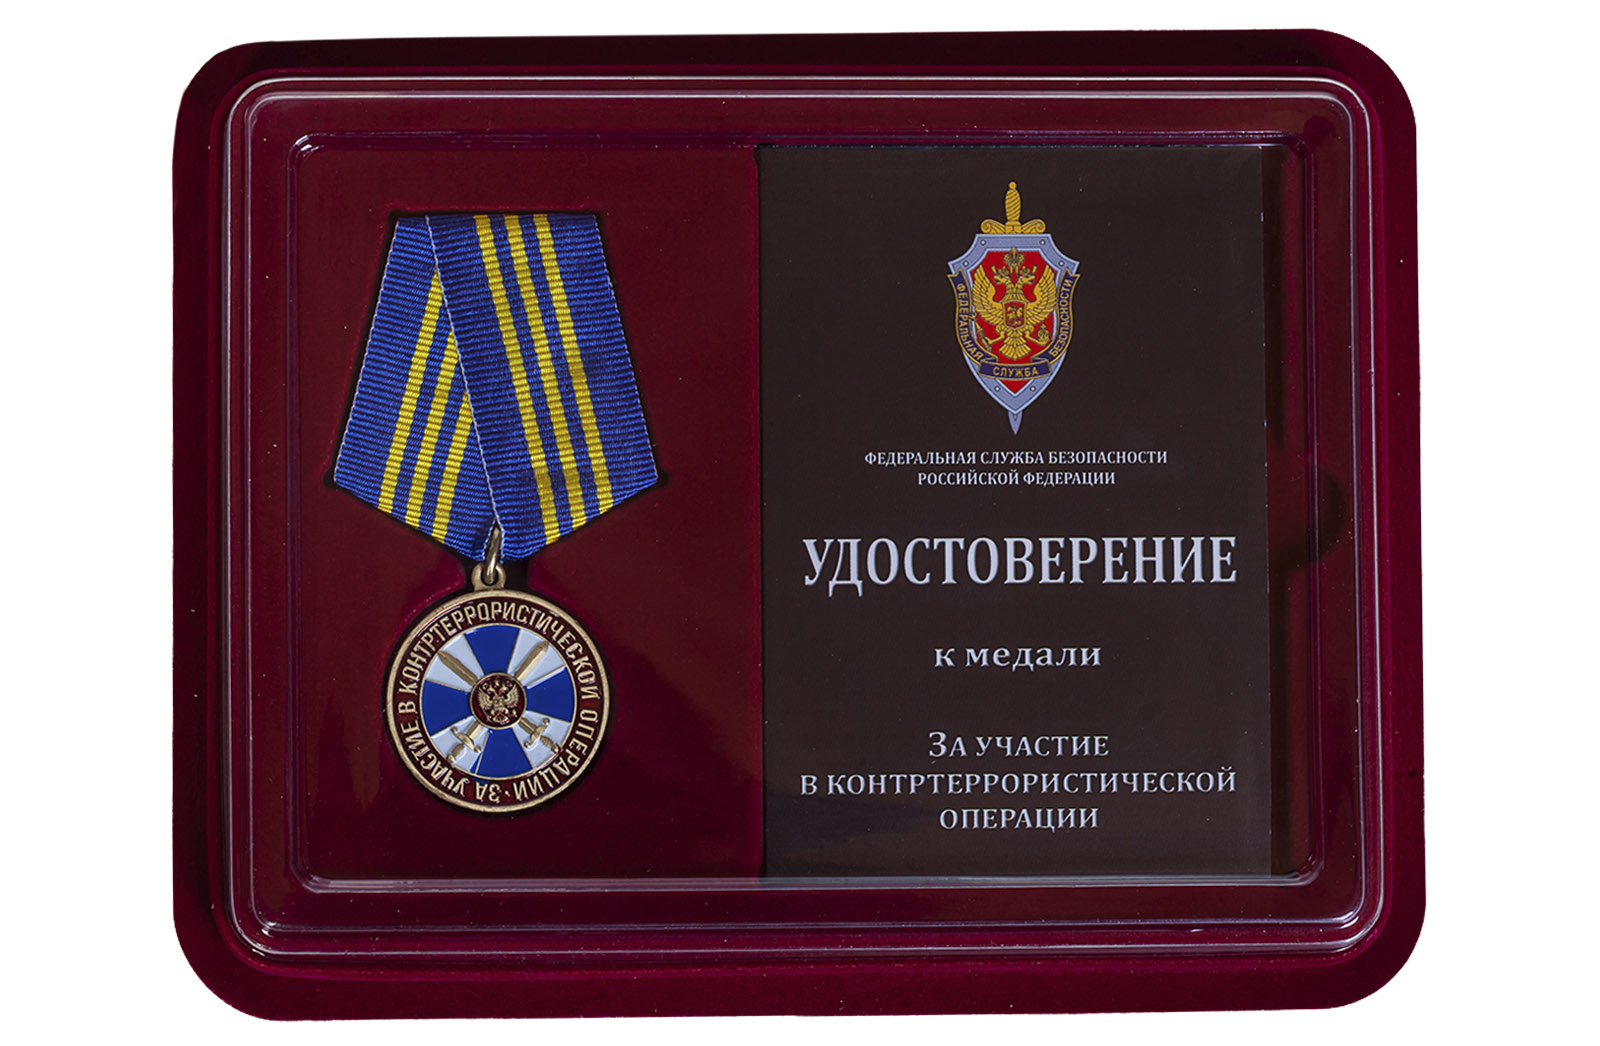 Купить медаль ФСБ России За участие в контртеррористической операции в подарок мужу